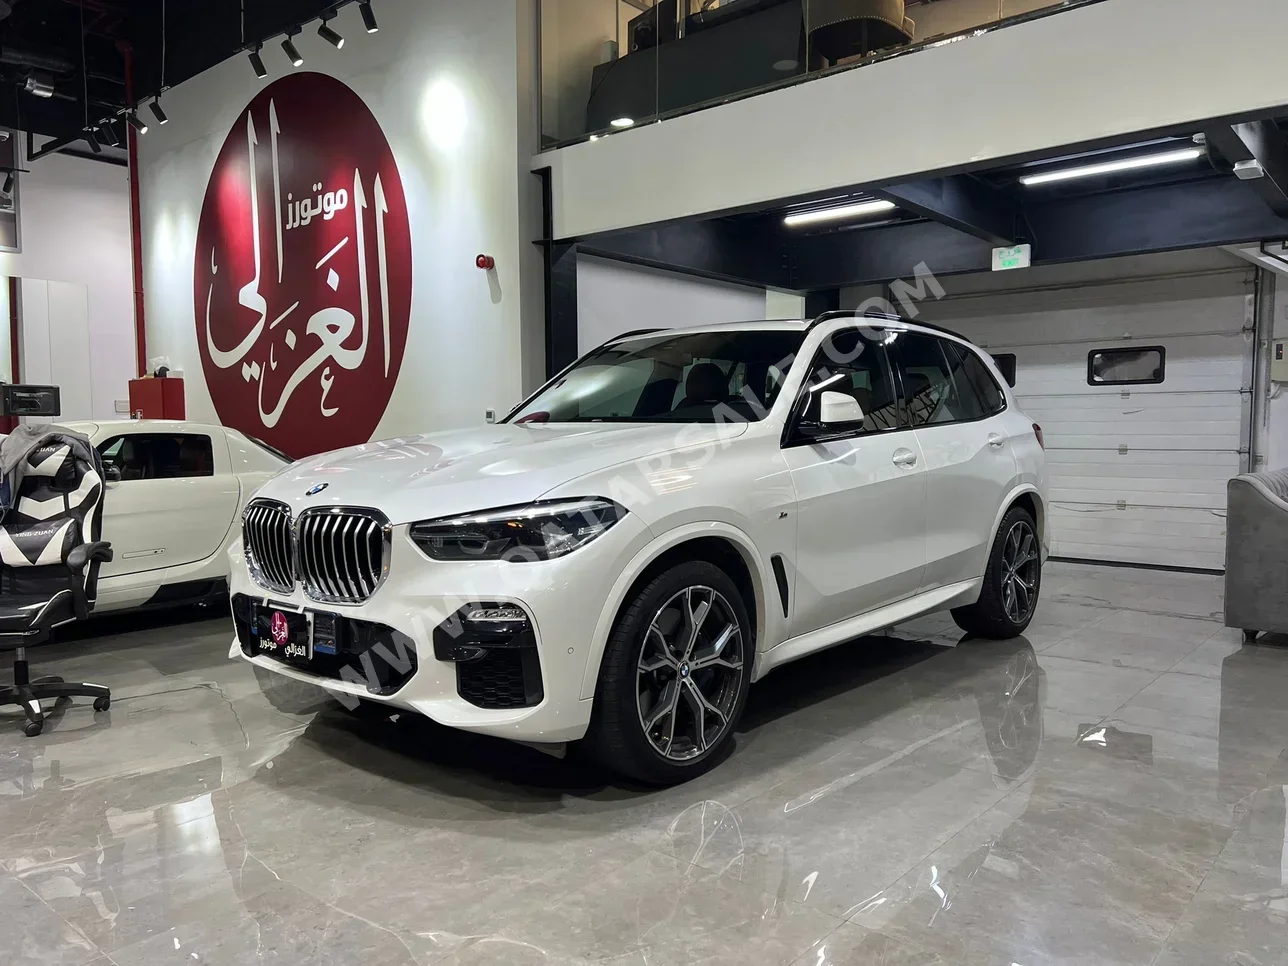 BMW  X-Series  X5  2019  Automatic  129,000 Km  6 Cylinder  Four Wheel Drive (4WD)  SUV  White  With Warranty